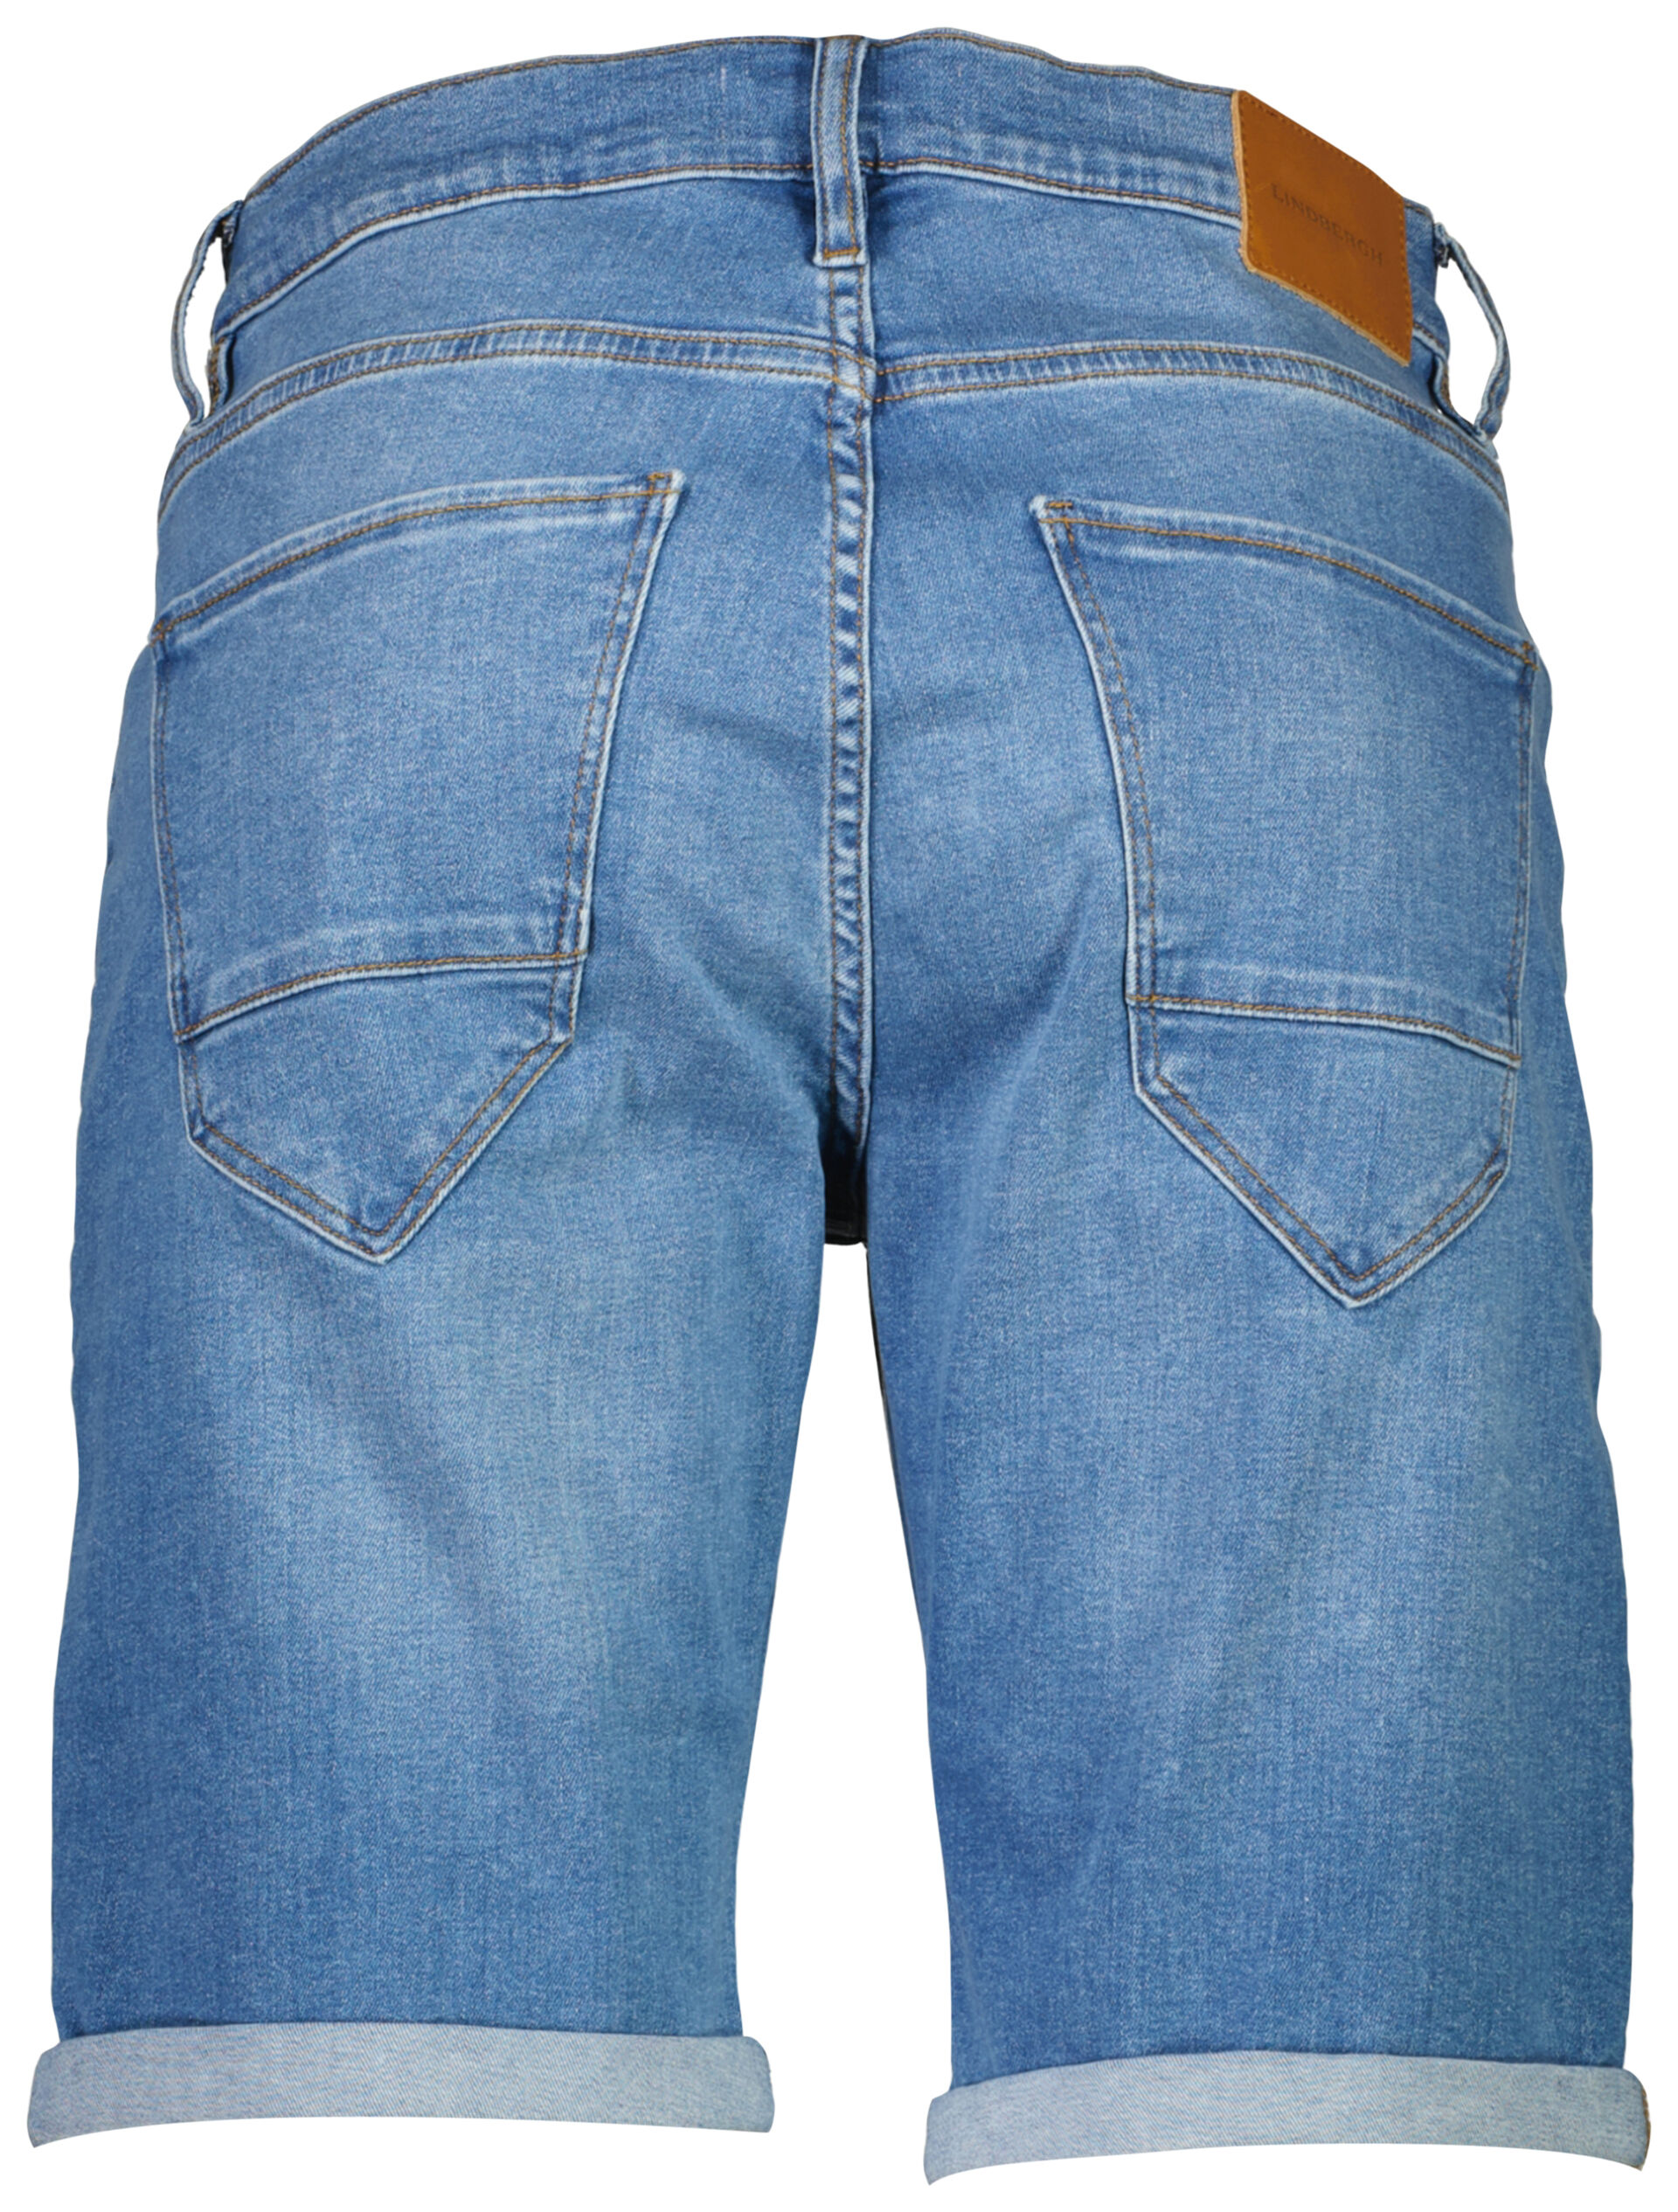 Jeans-Shorts 30-500004PBBZT